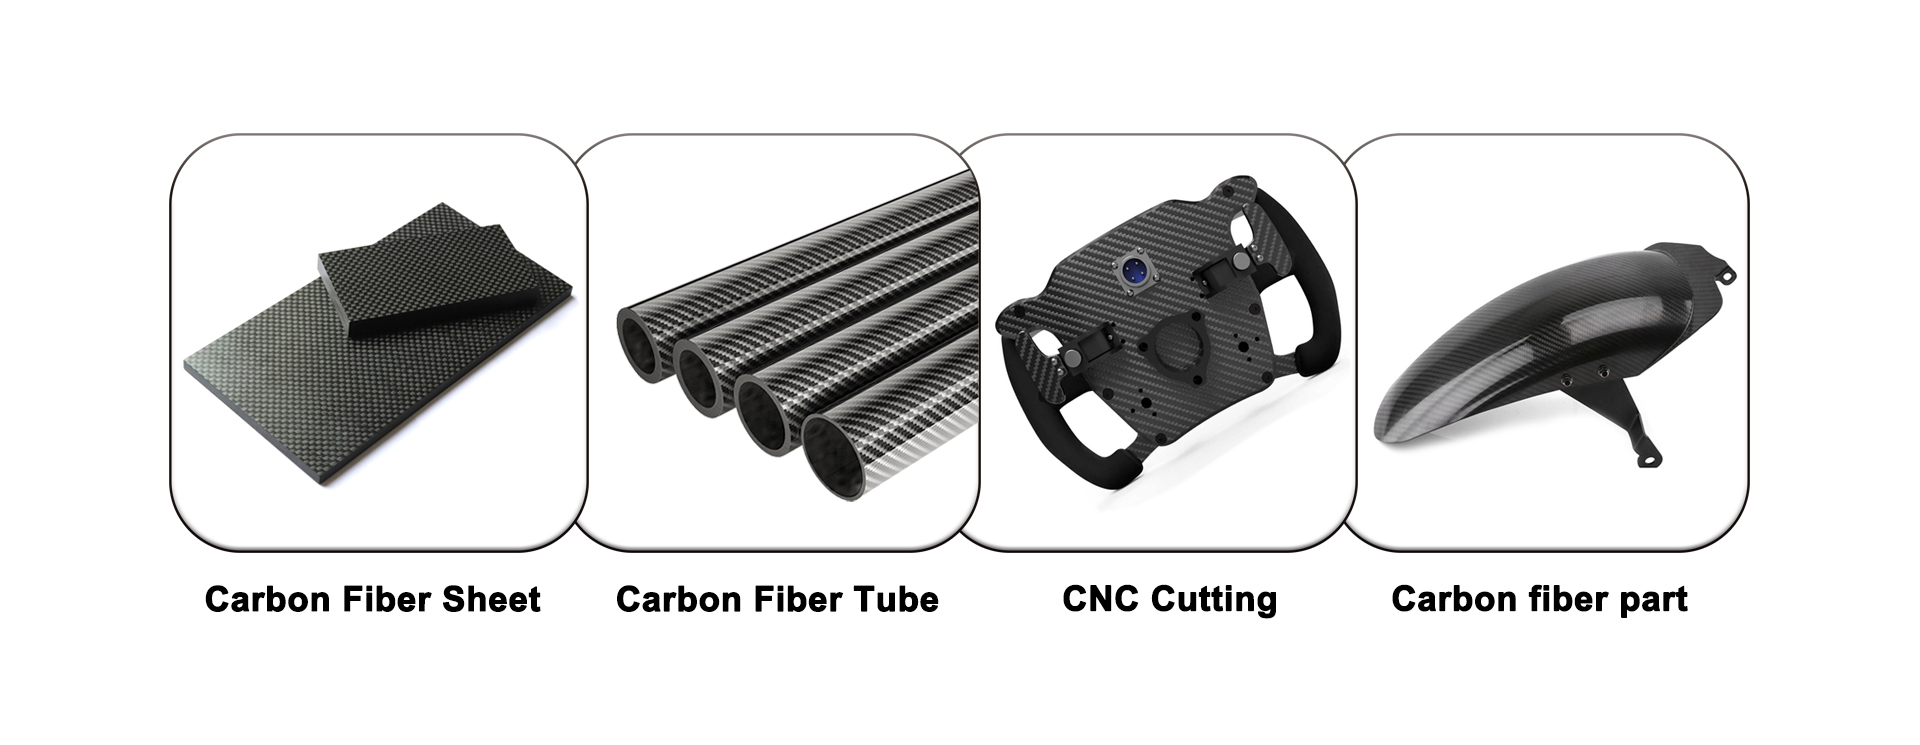 Carbon Fiber CNC Service, Carbon Fiber Parts, Carbon Fiber Sheet, Carbon Fiber Tube